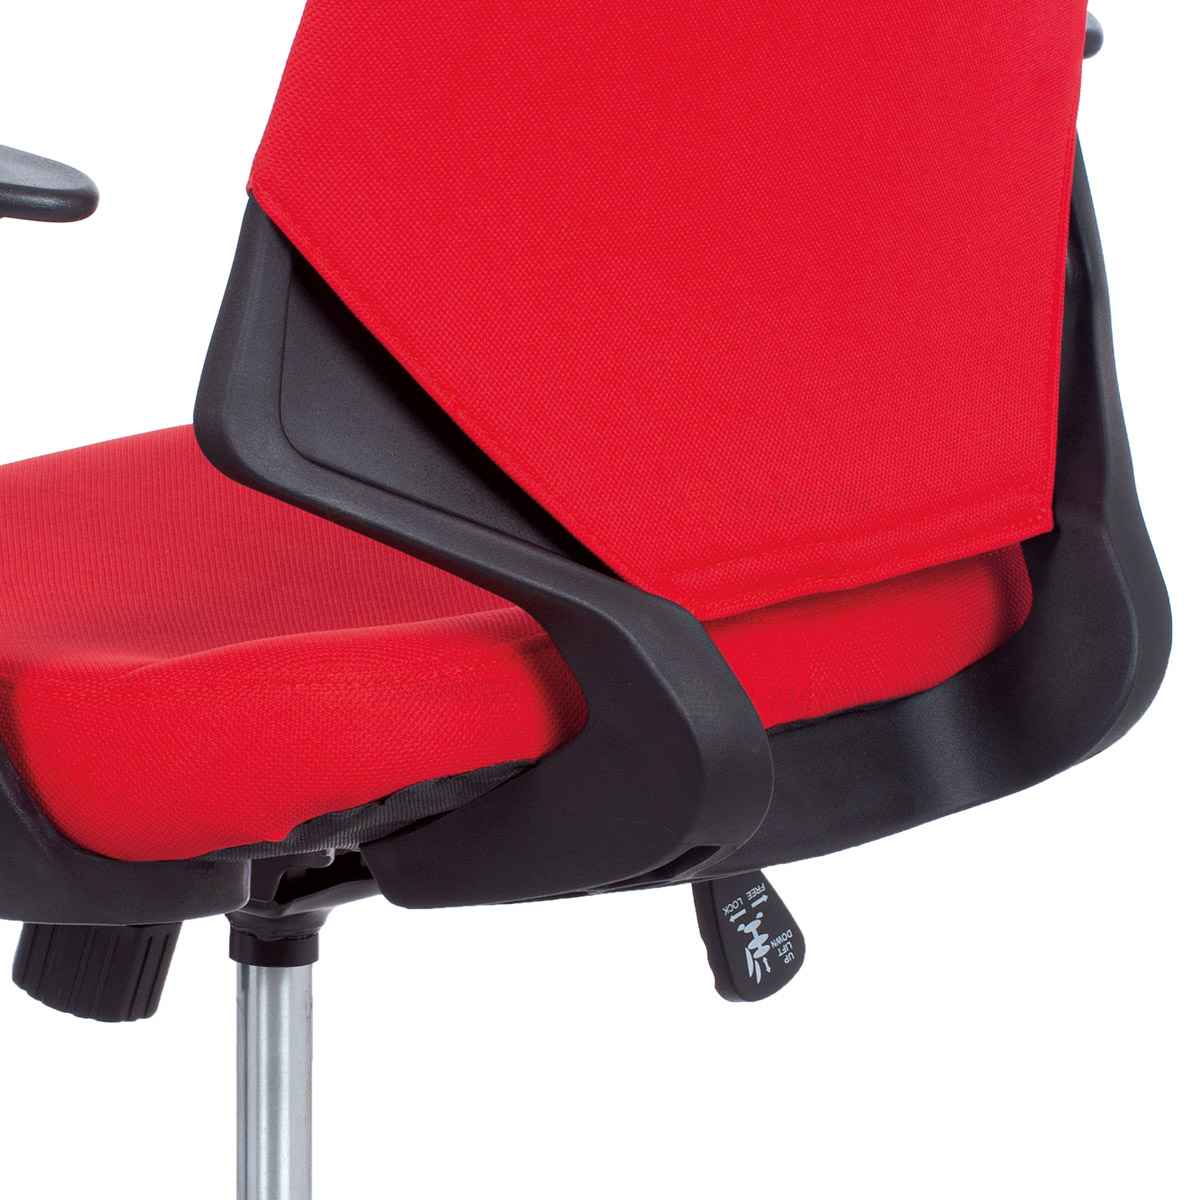 Kancelářská židle, červená látka, černé PP područky DOPRODEJ